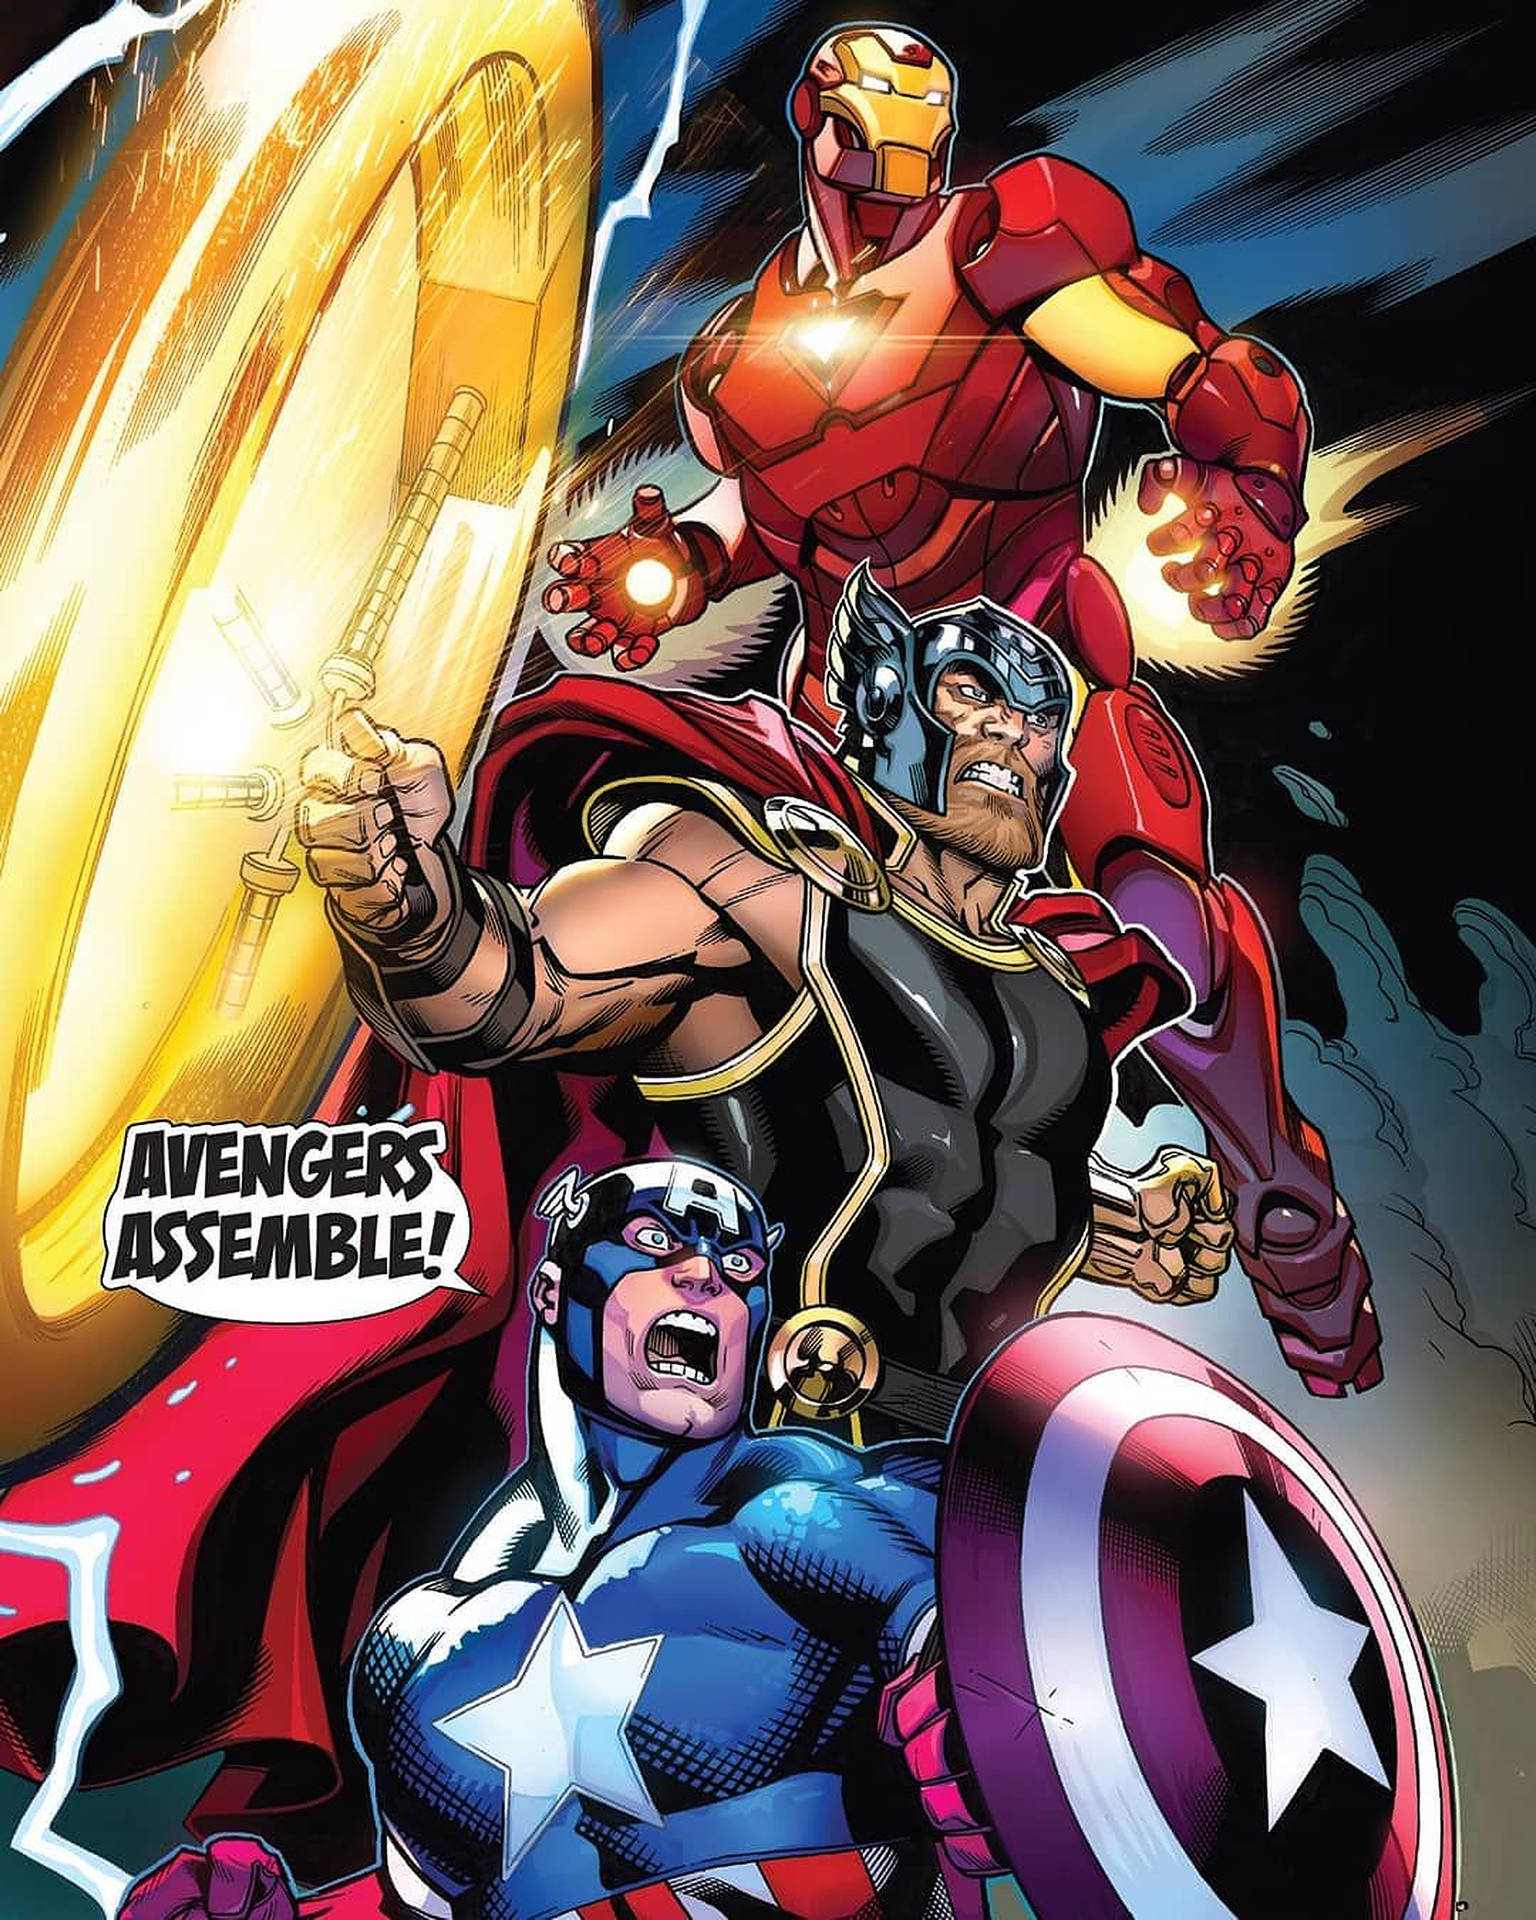 Avengers,sammelt Euch! Thor, Iron Man, Captain America. Wallpaper